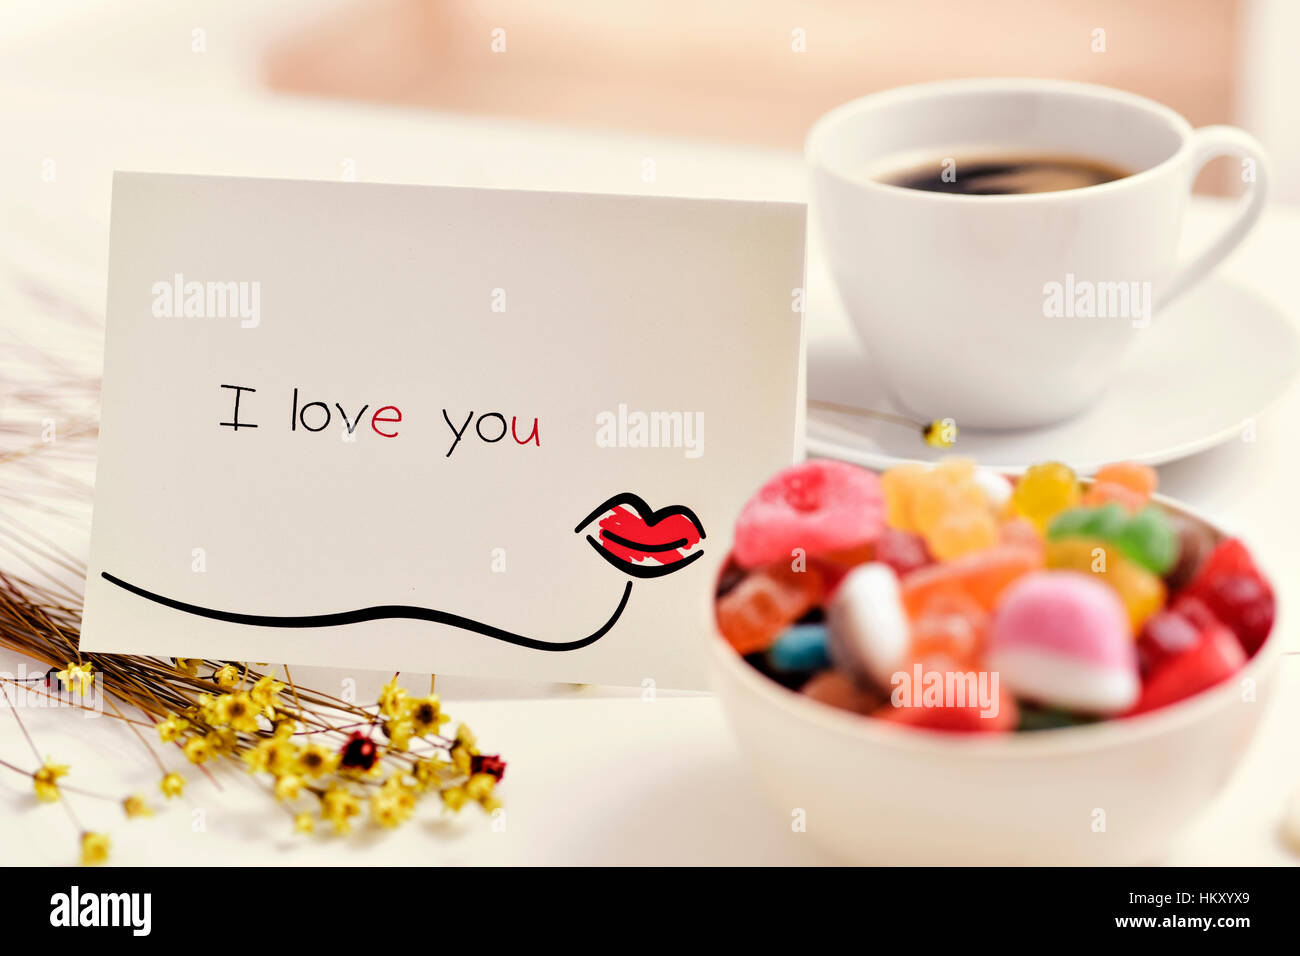 eine selbstgemachte Postkarte, gemacht von mir mit einem Kuss und den Text ich liebe dich, auf einem weißen Tisch neben einer Tasse Kaffee, Blumen und einem Bogen gezeichnet Stockfoto